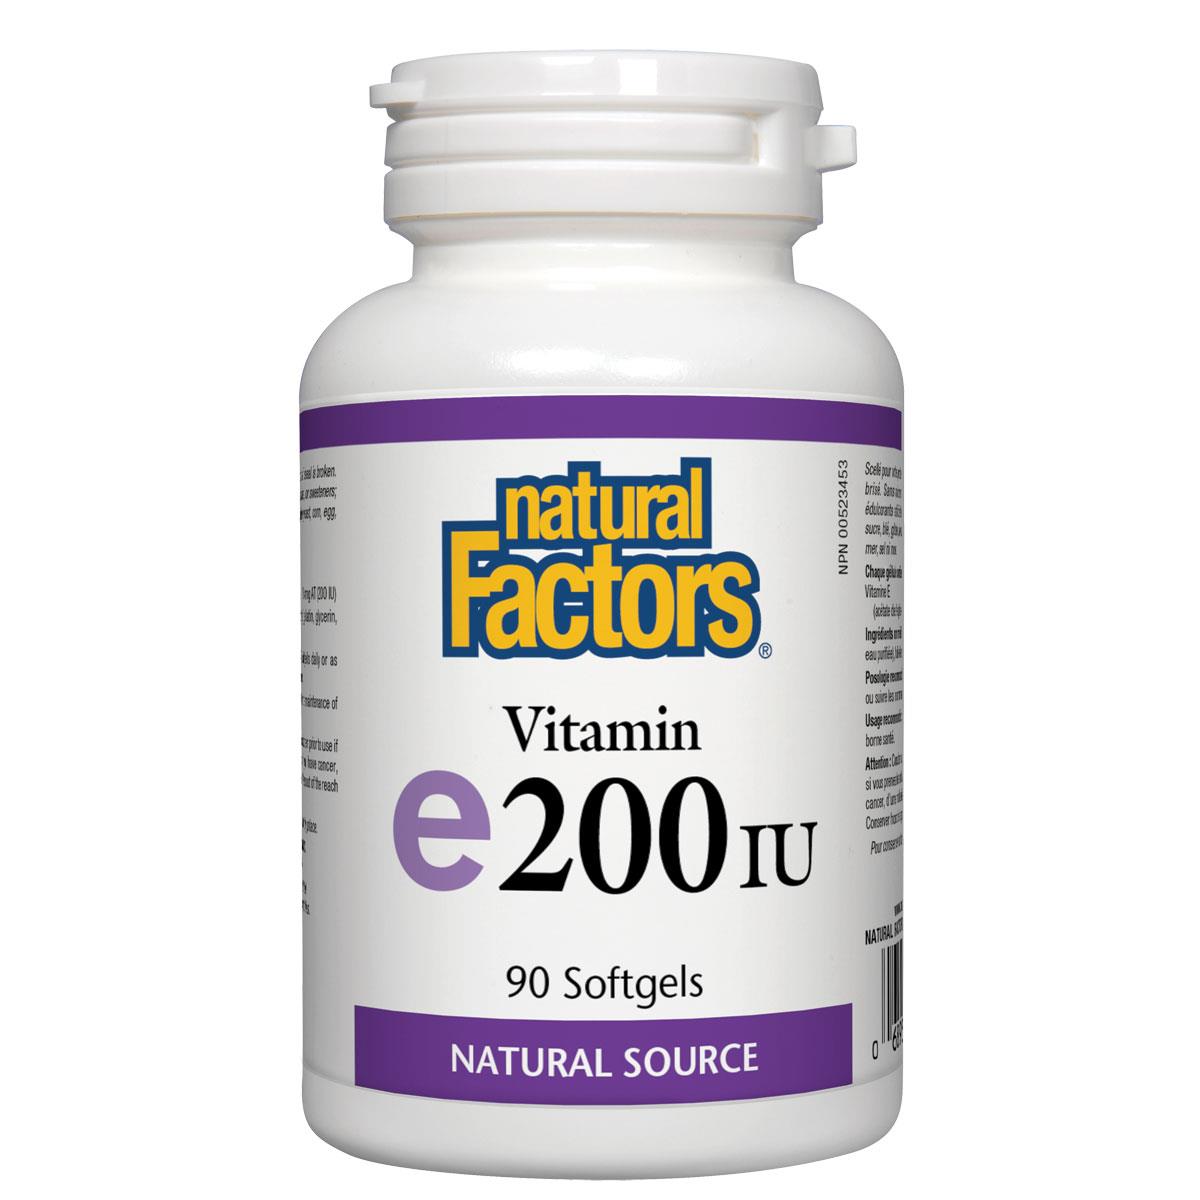 Natural Factors Vitamin E200IU (Natural Source), 90 Softgels